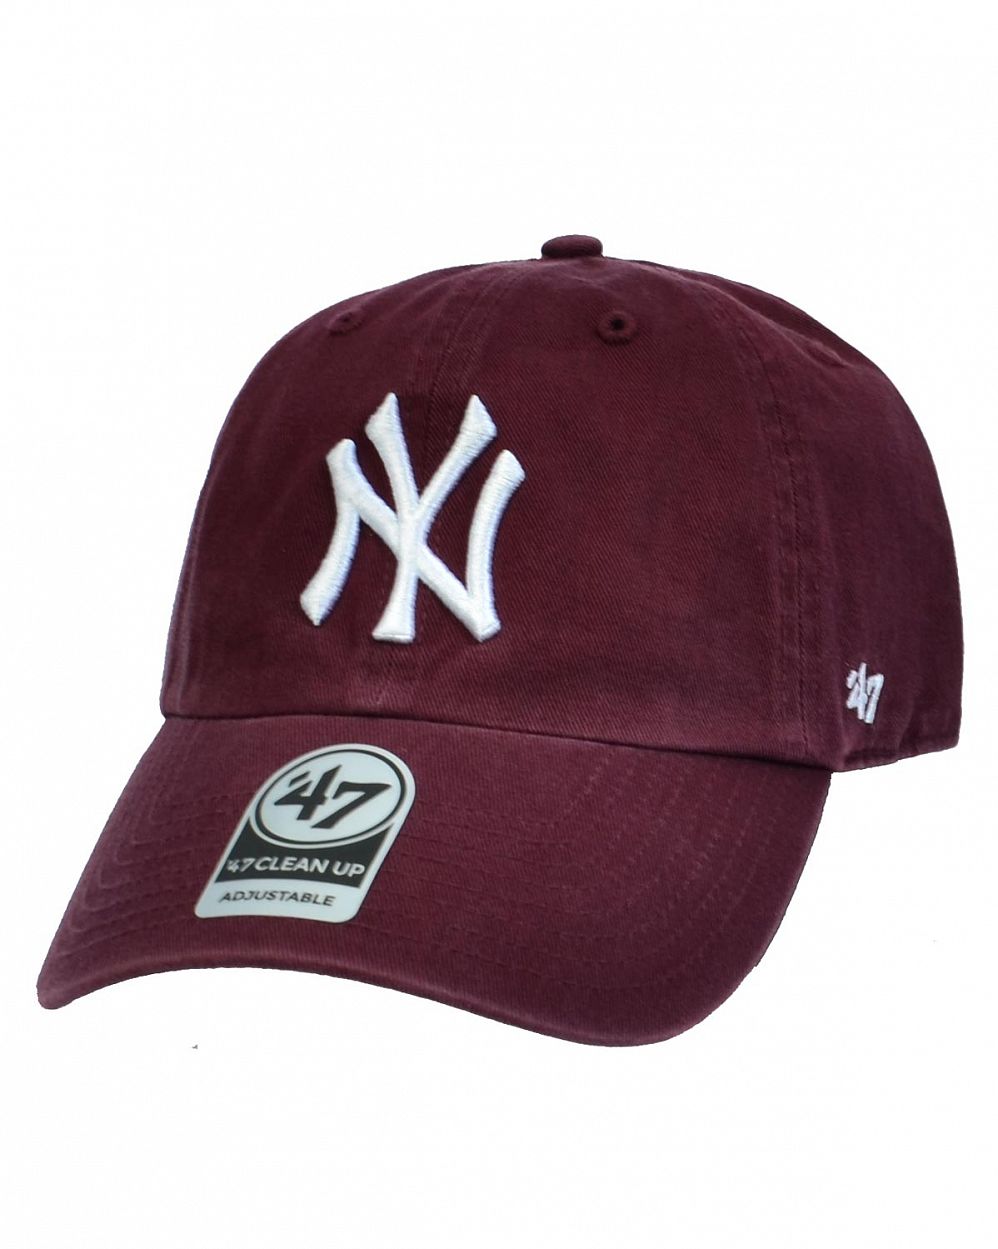 Бейсболка классическая с изогнутым козырьком '47 Brand Clean Up New York Yankees Dark Maroon отзывы